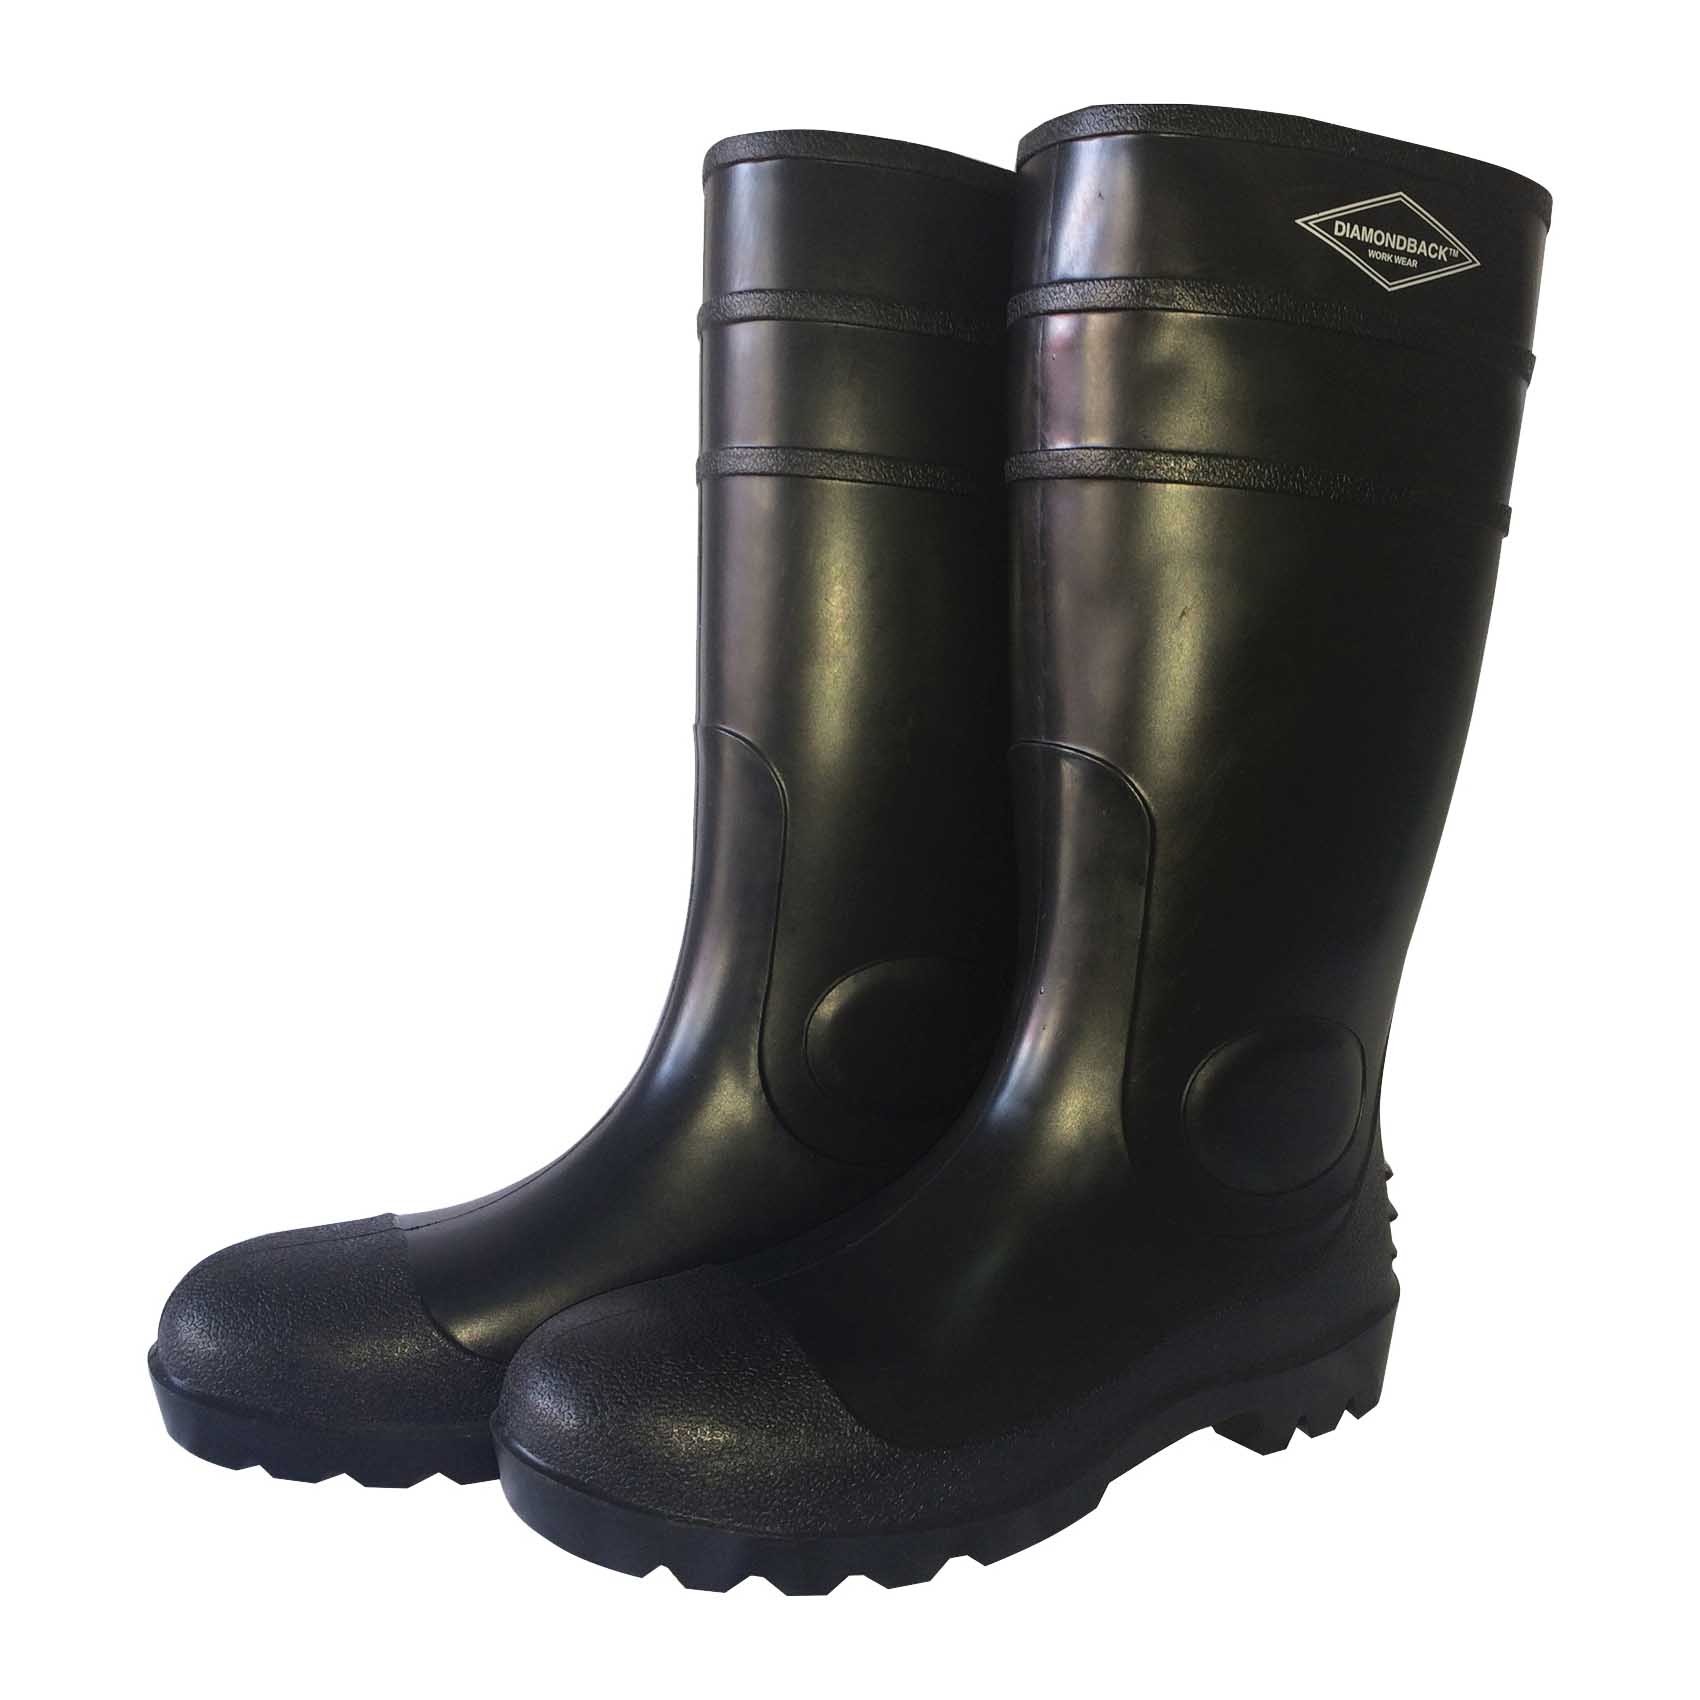 L-G06B12 Knee Boots, 12, Black, PVC Upper